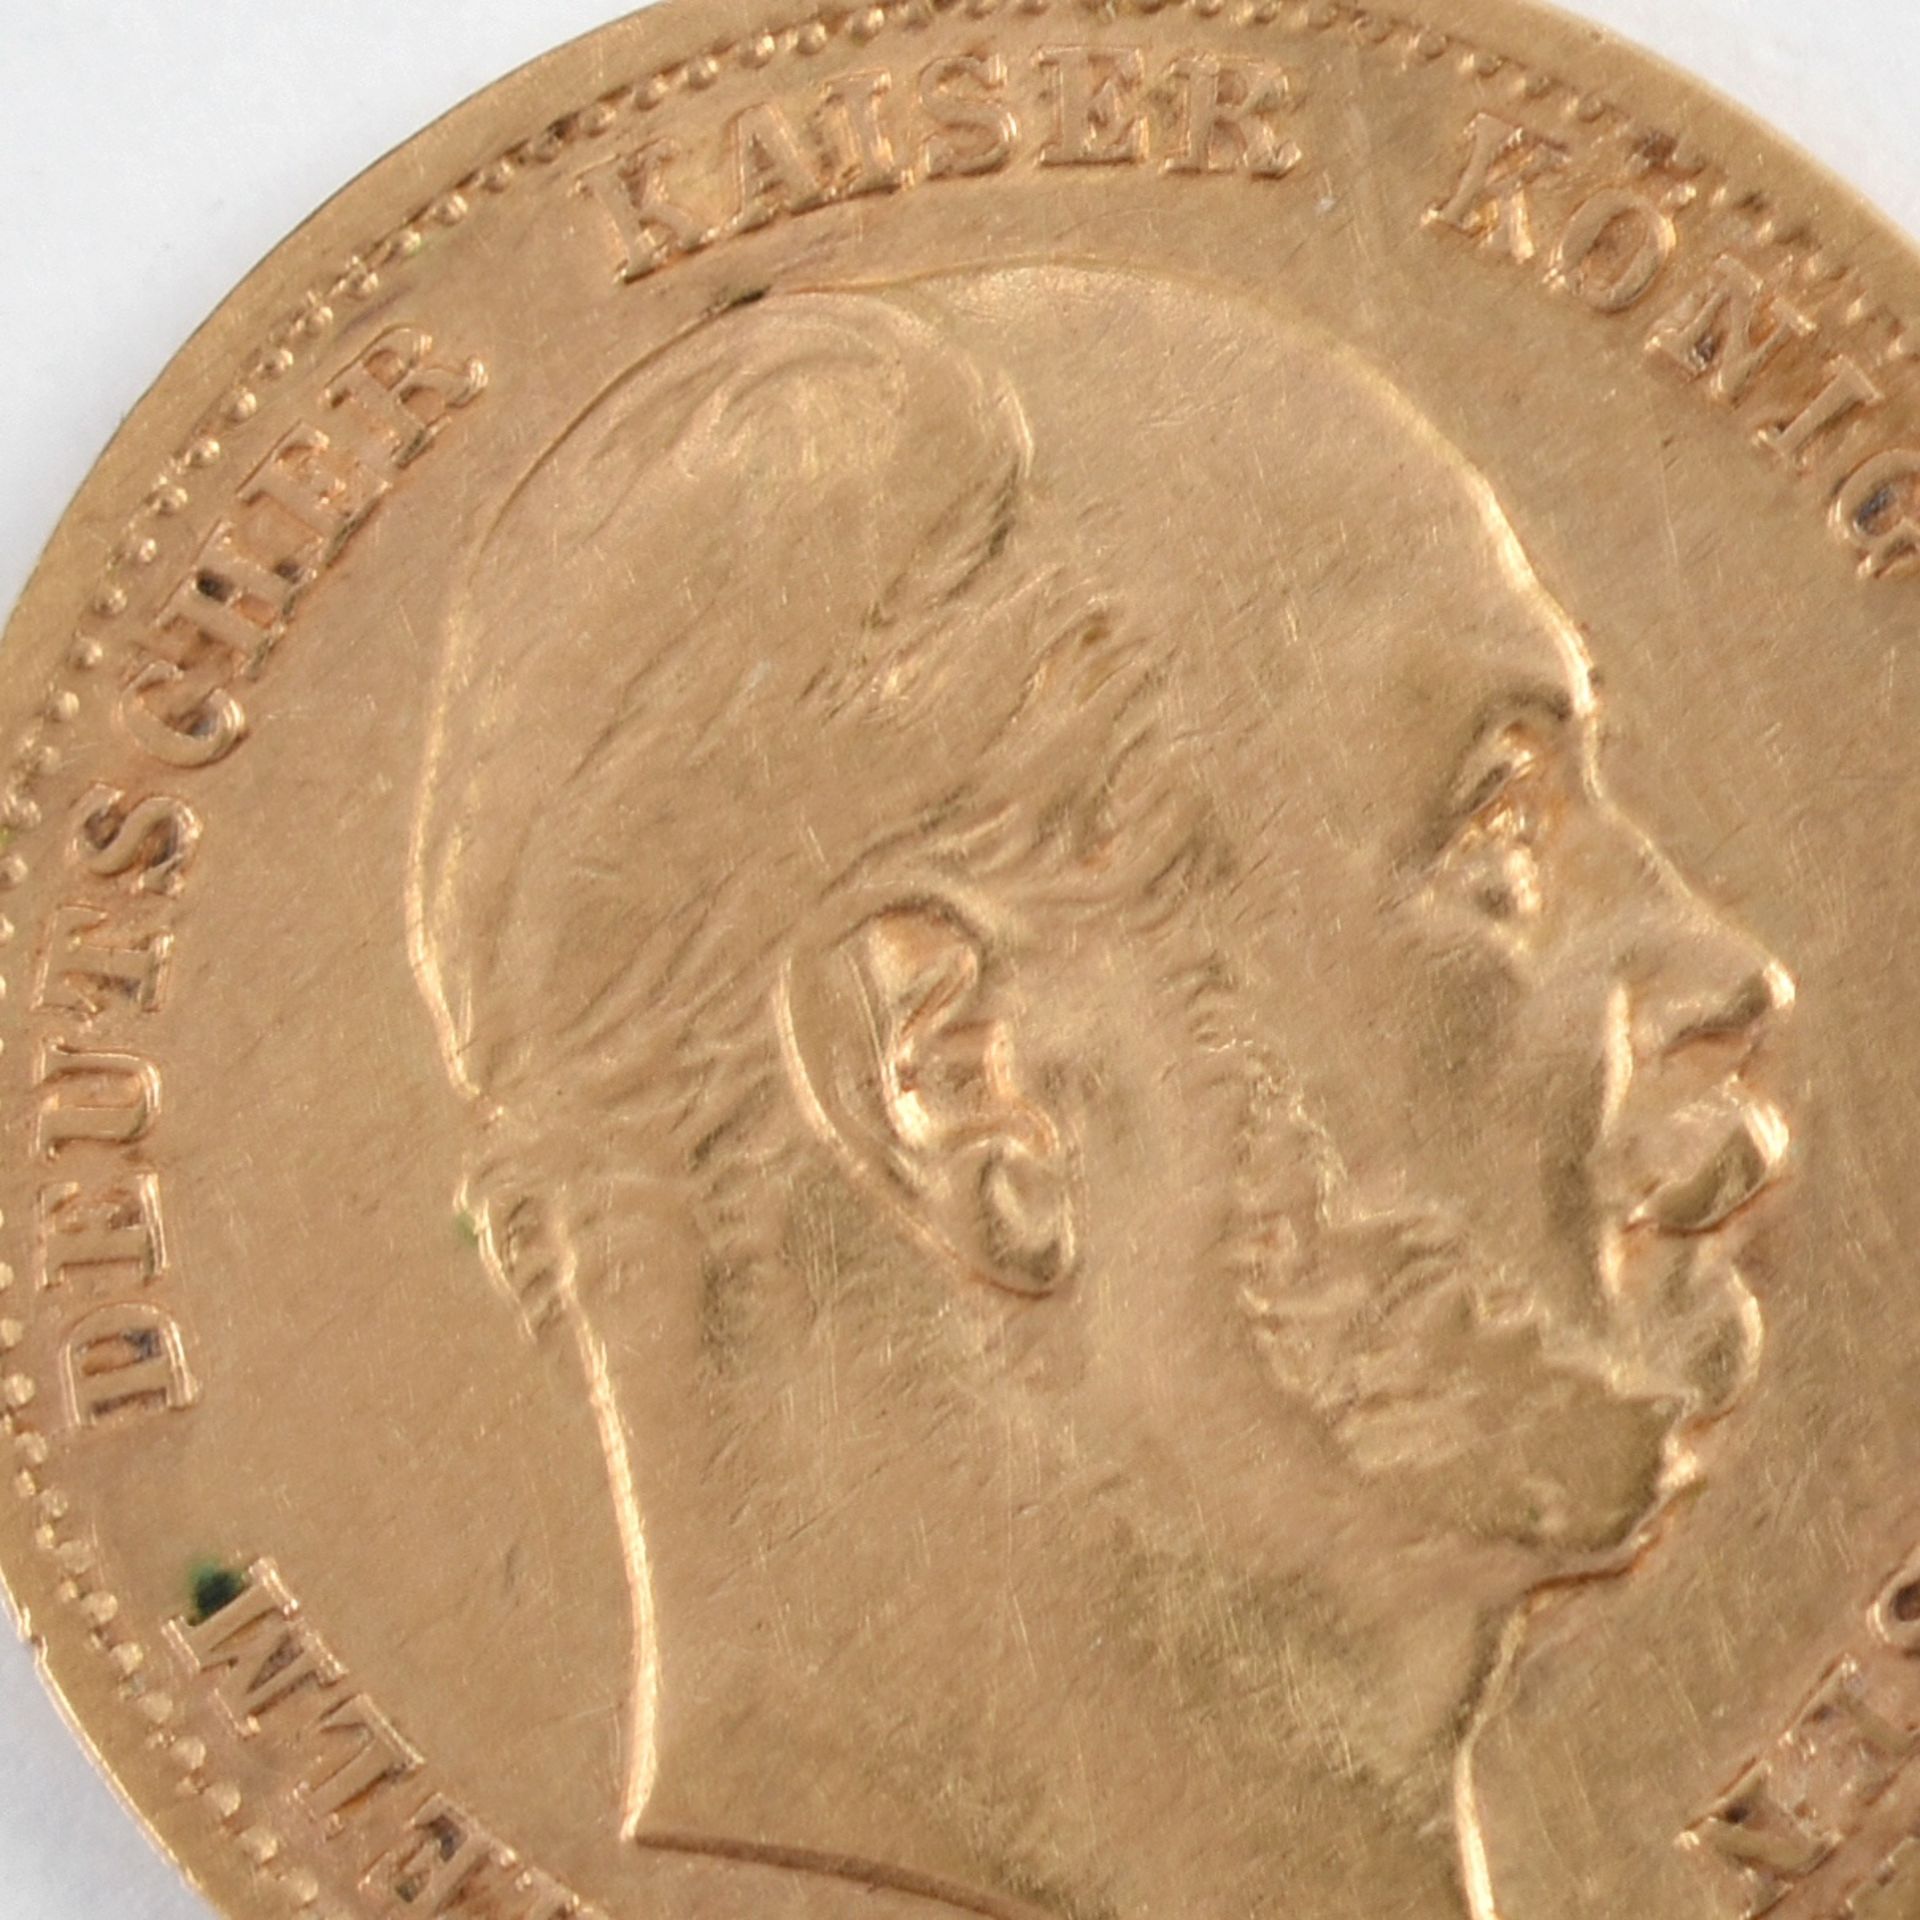 Goldmünze Kaiserreich - Preußen 1872 10 Mark in Gold, 900/1000, 3,98 g, D ca. 19,5 mm, av. Wilhelm